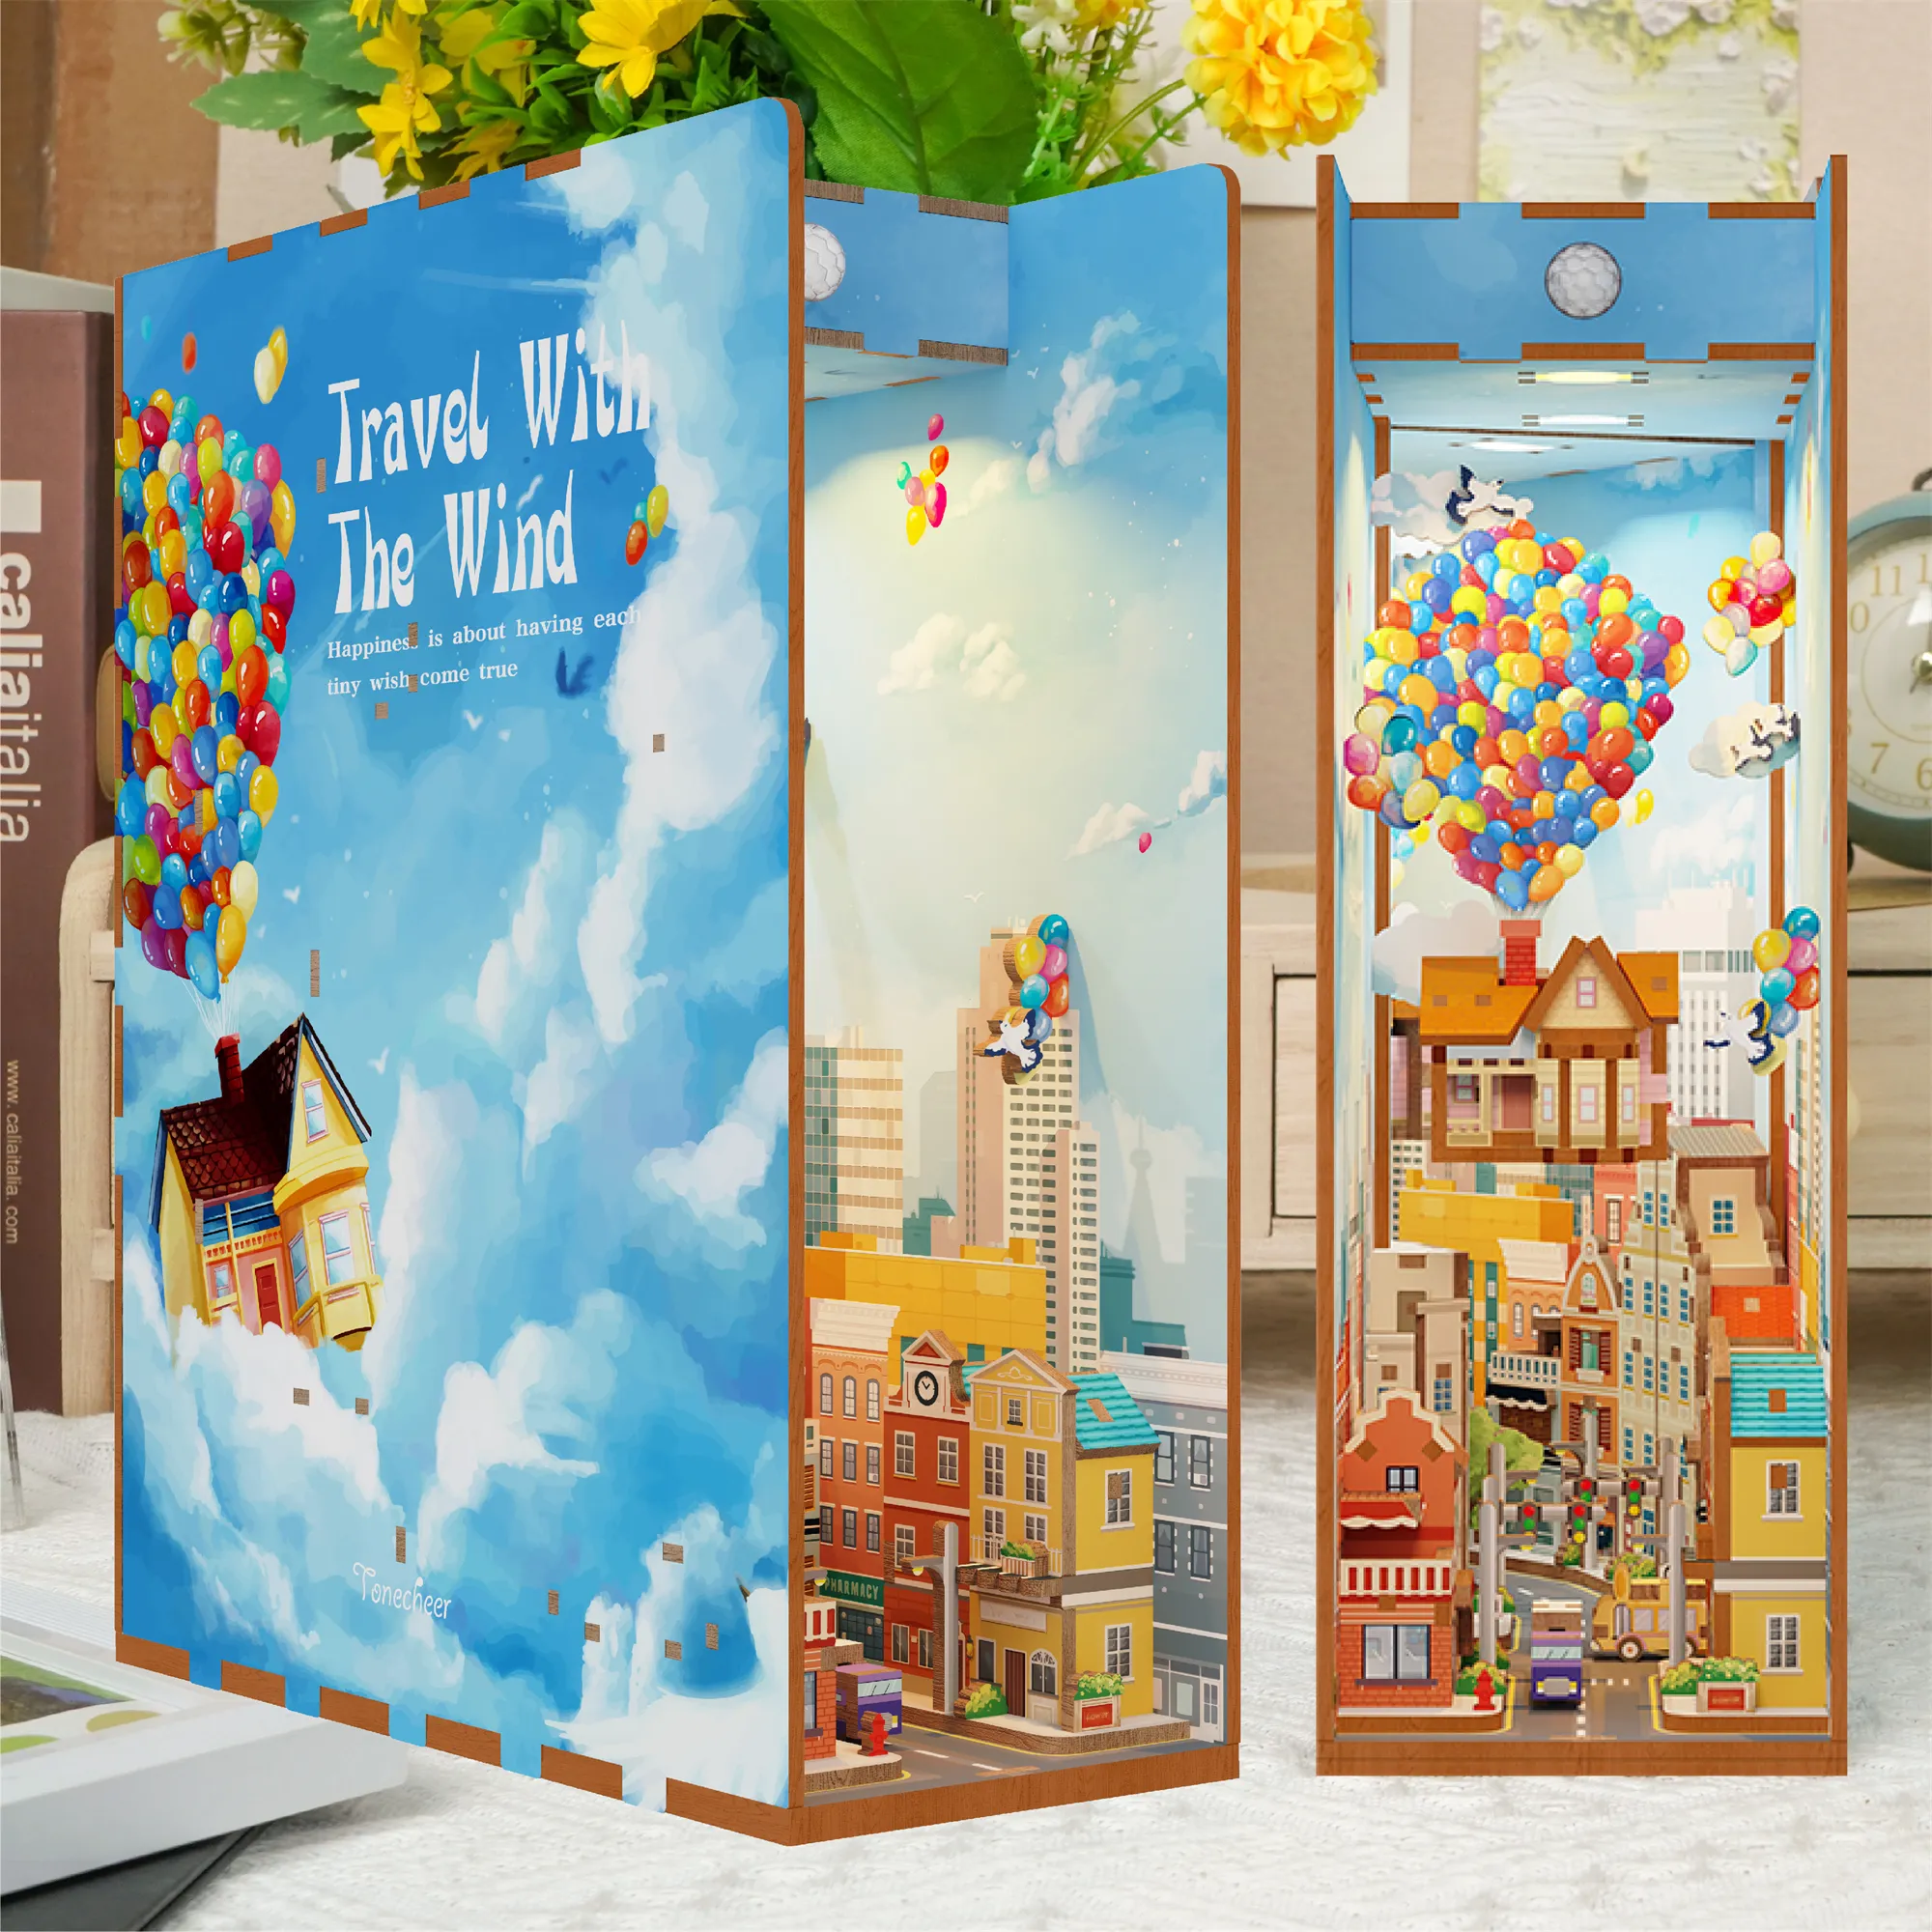 Tonecheer السفر مع الرياح مع ضوء LED تجميع اللعب كتاب للأطفال لعبة تعليمية 3D الألغاز زاوية